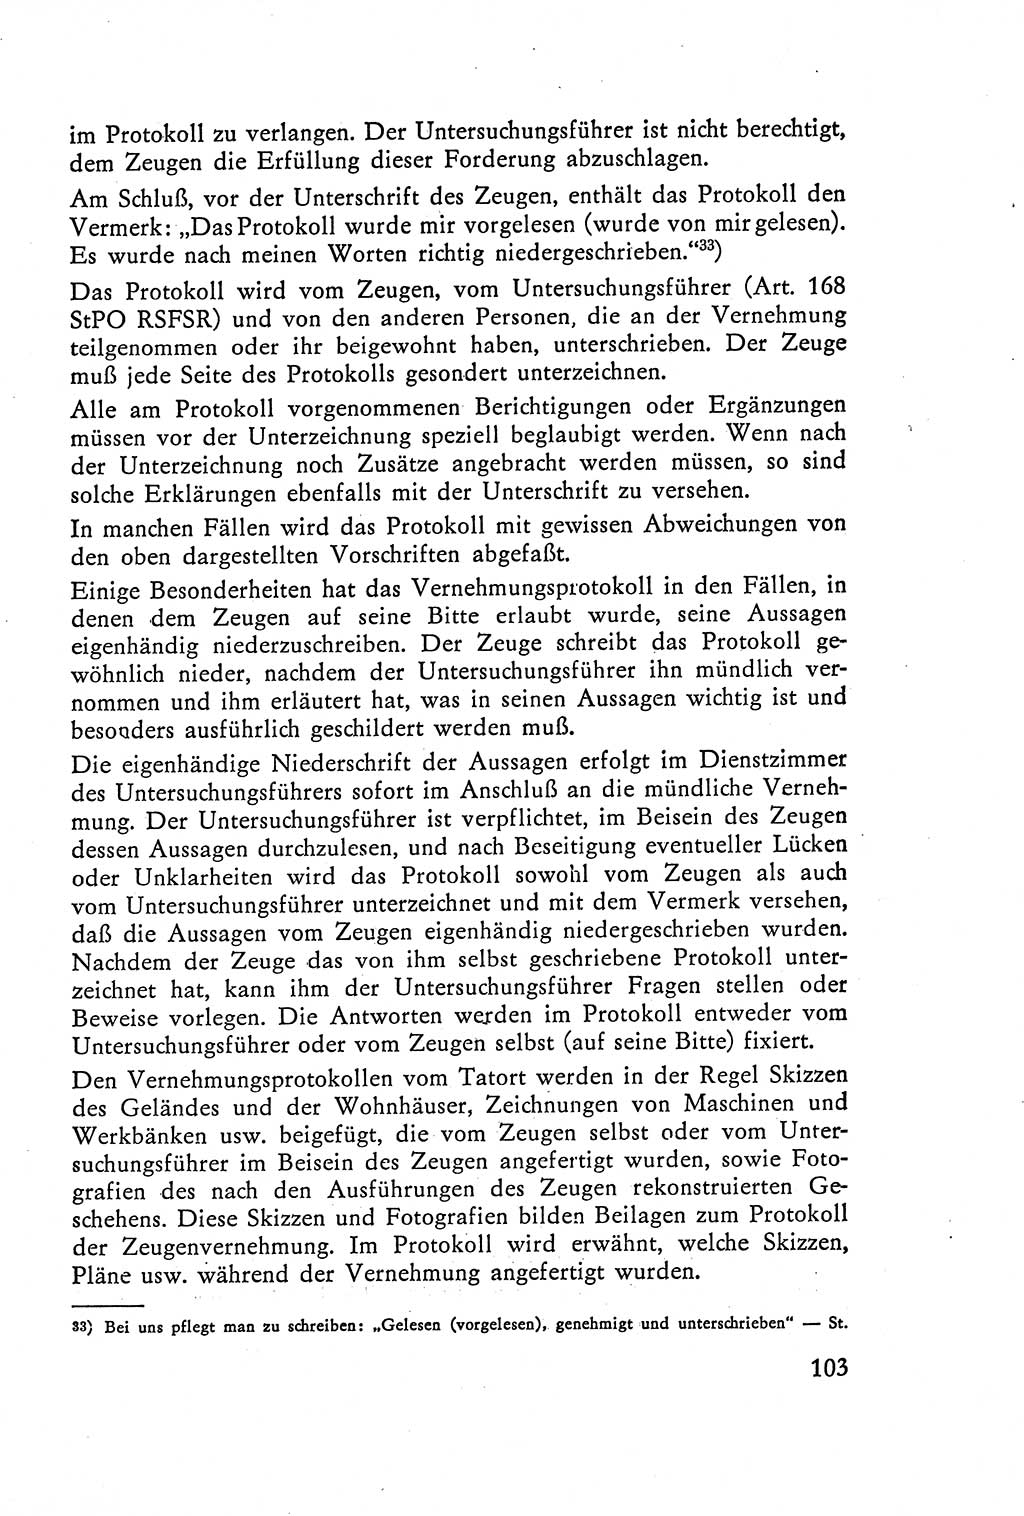 Die Vernehmung [Deutsche Demokratische Republik (DDR)] 1960, Seite 103 (Vern. DDR 1960, S. 103)